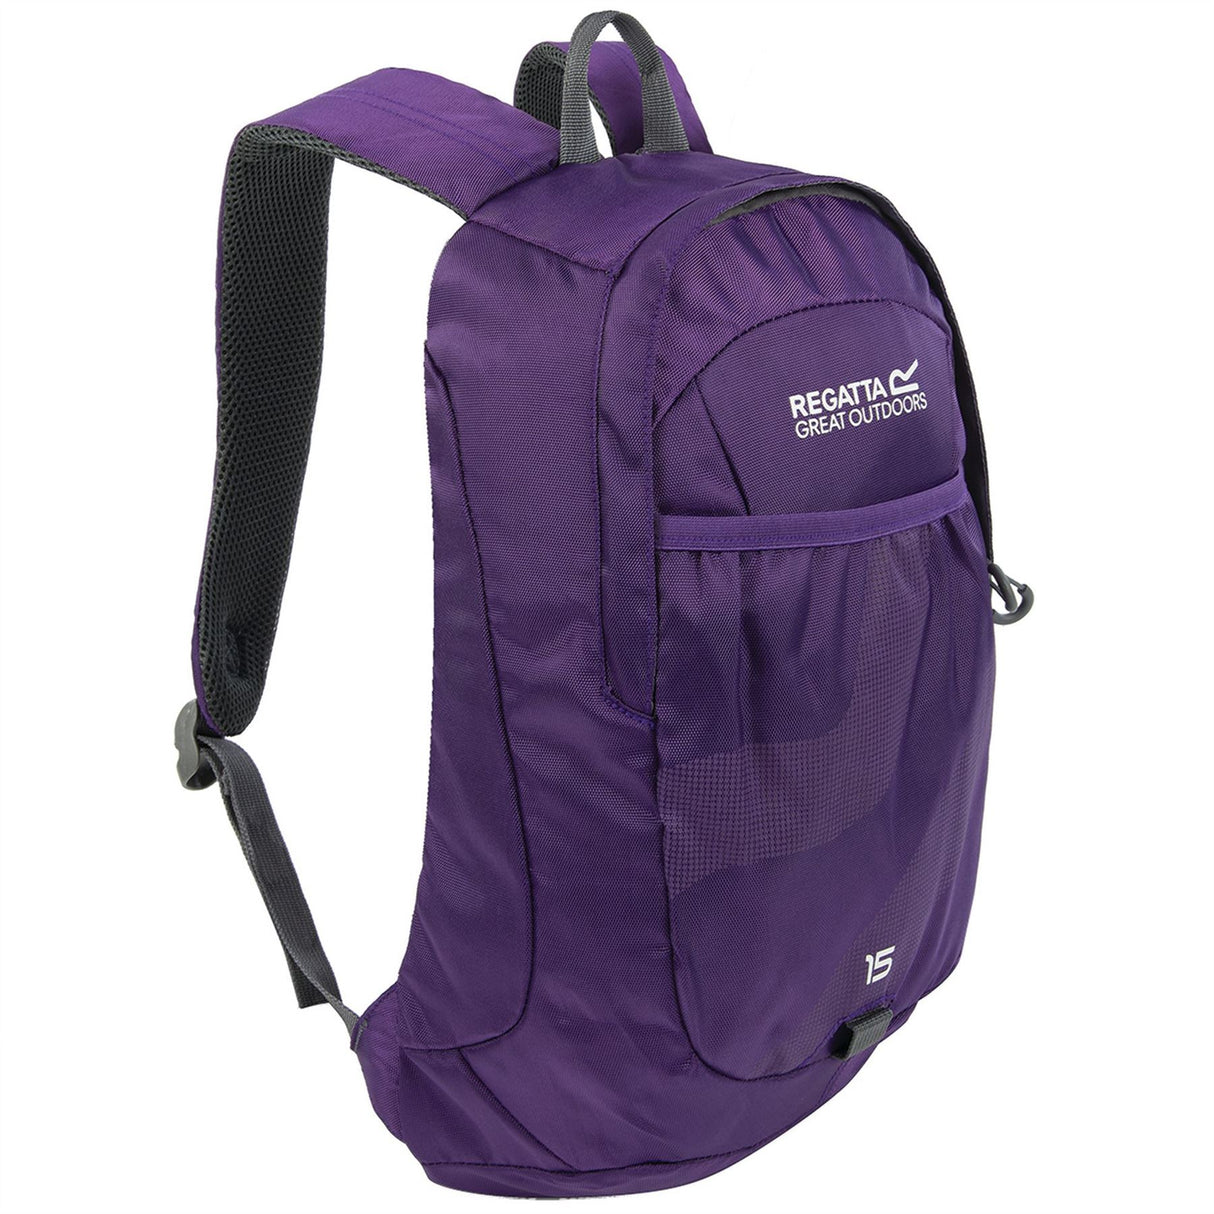 Regatta Bedabase II 15 Litre Backpack